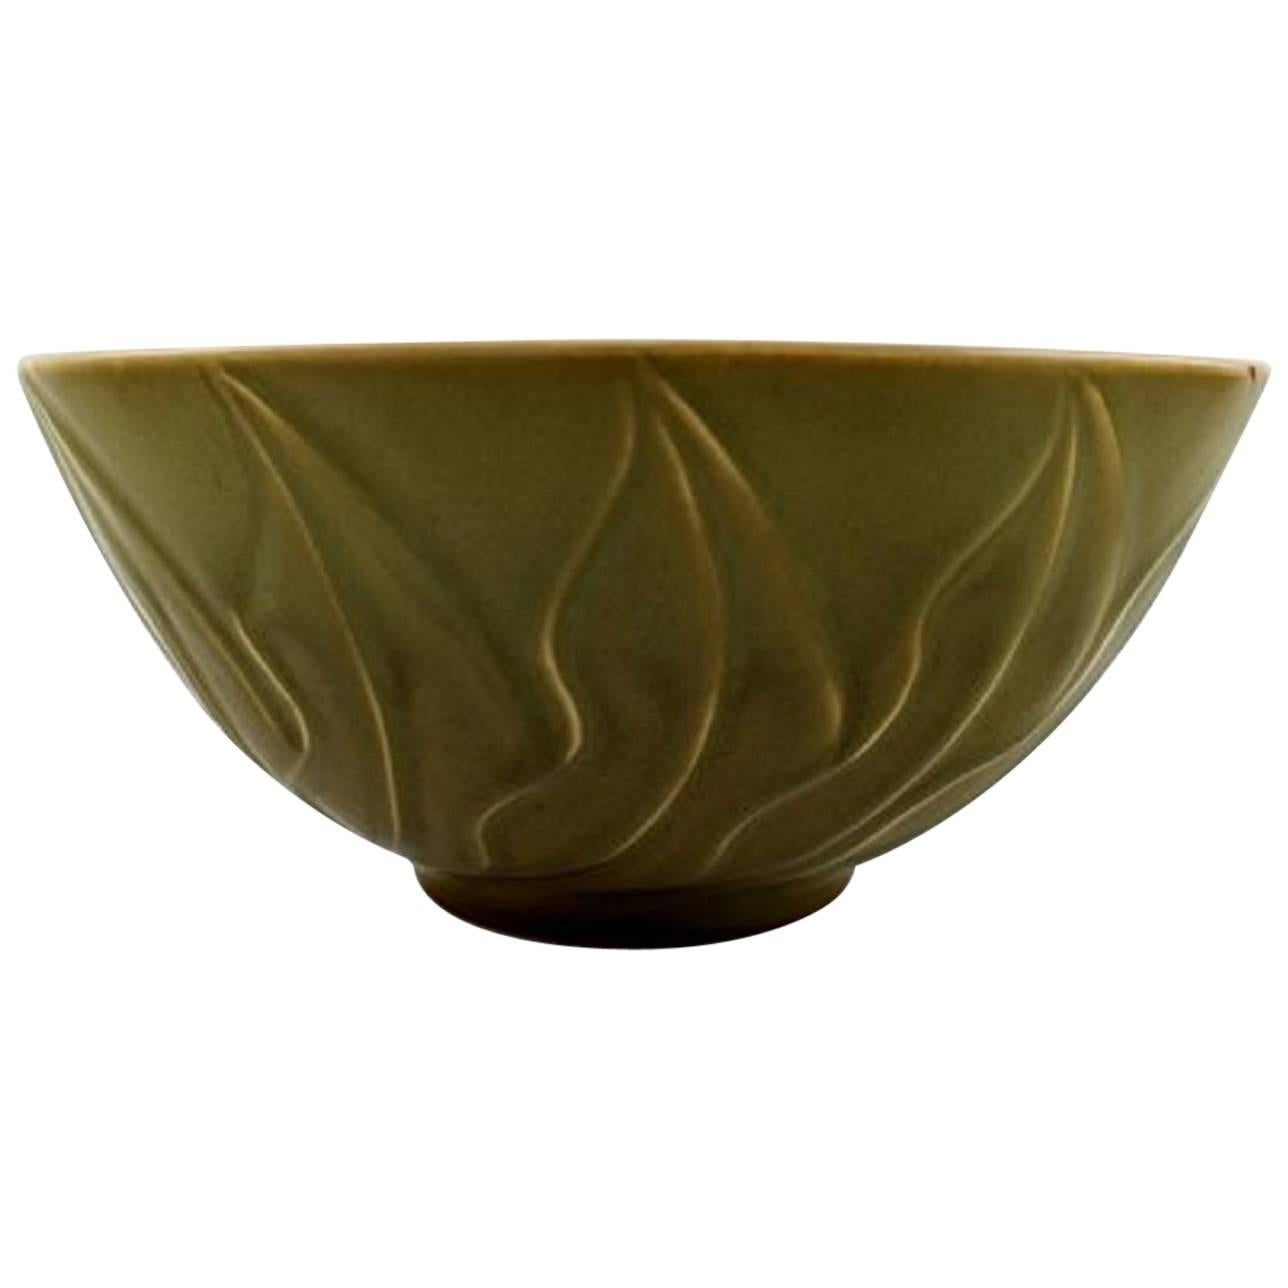 Christian Poulsen, Bing & Grondahl 'B&G' Stoneware Bowl For Sale